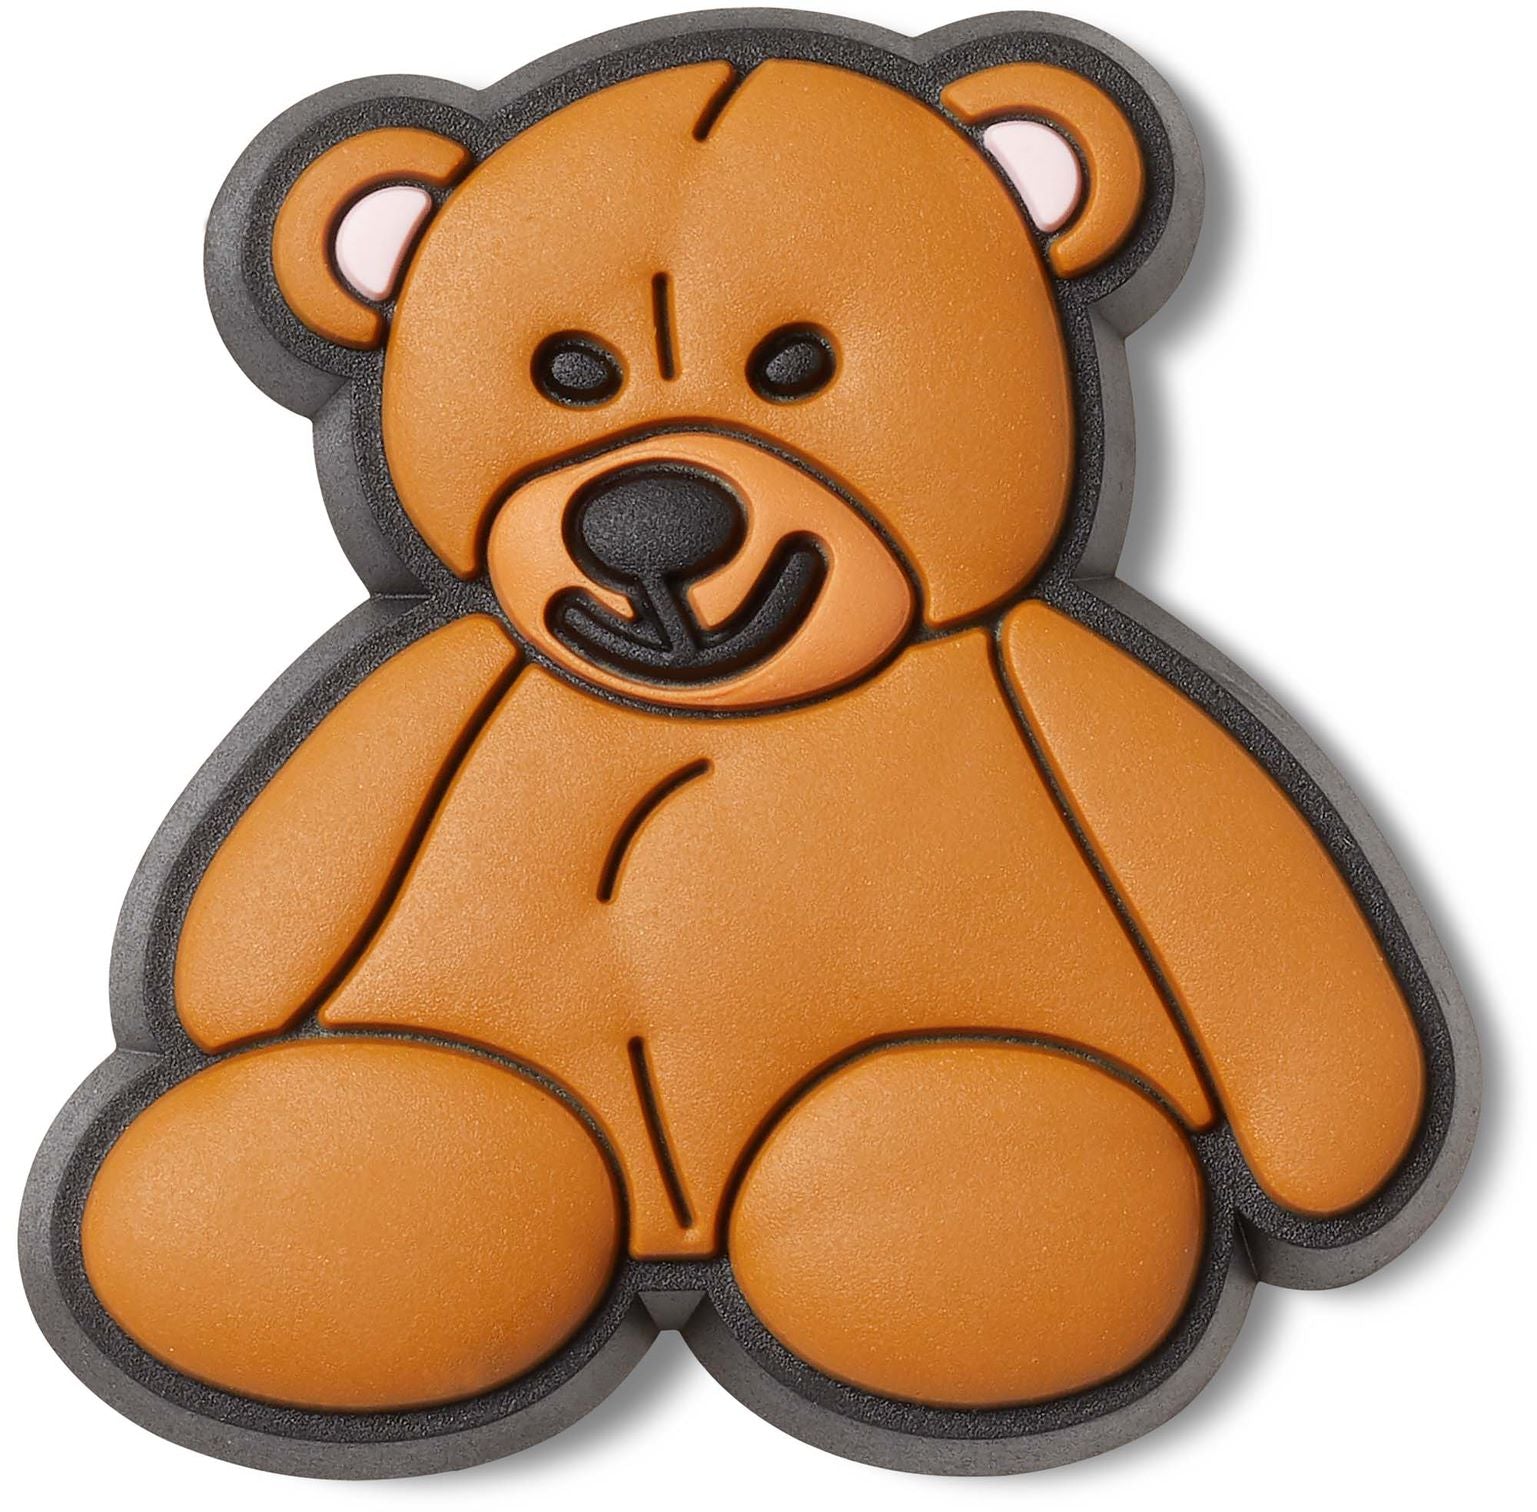 Jibbitz Teddy Bear – Little Trooper Limited